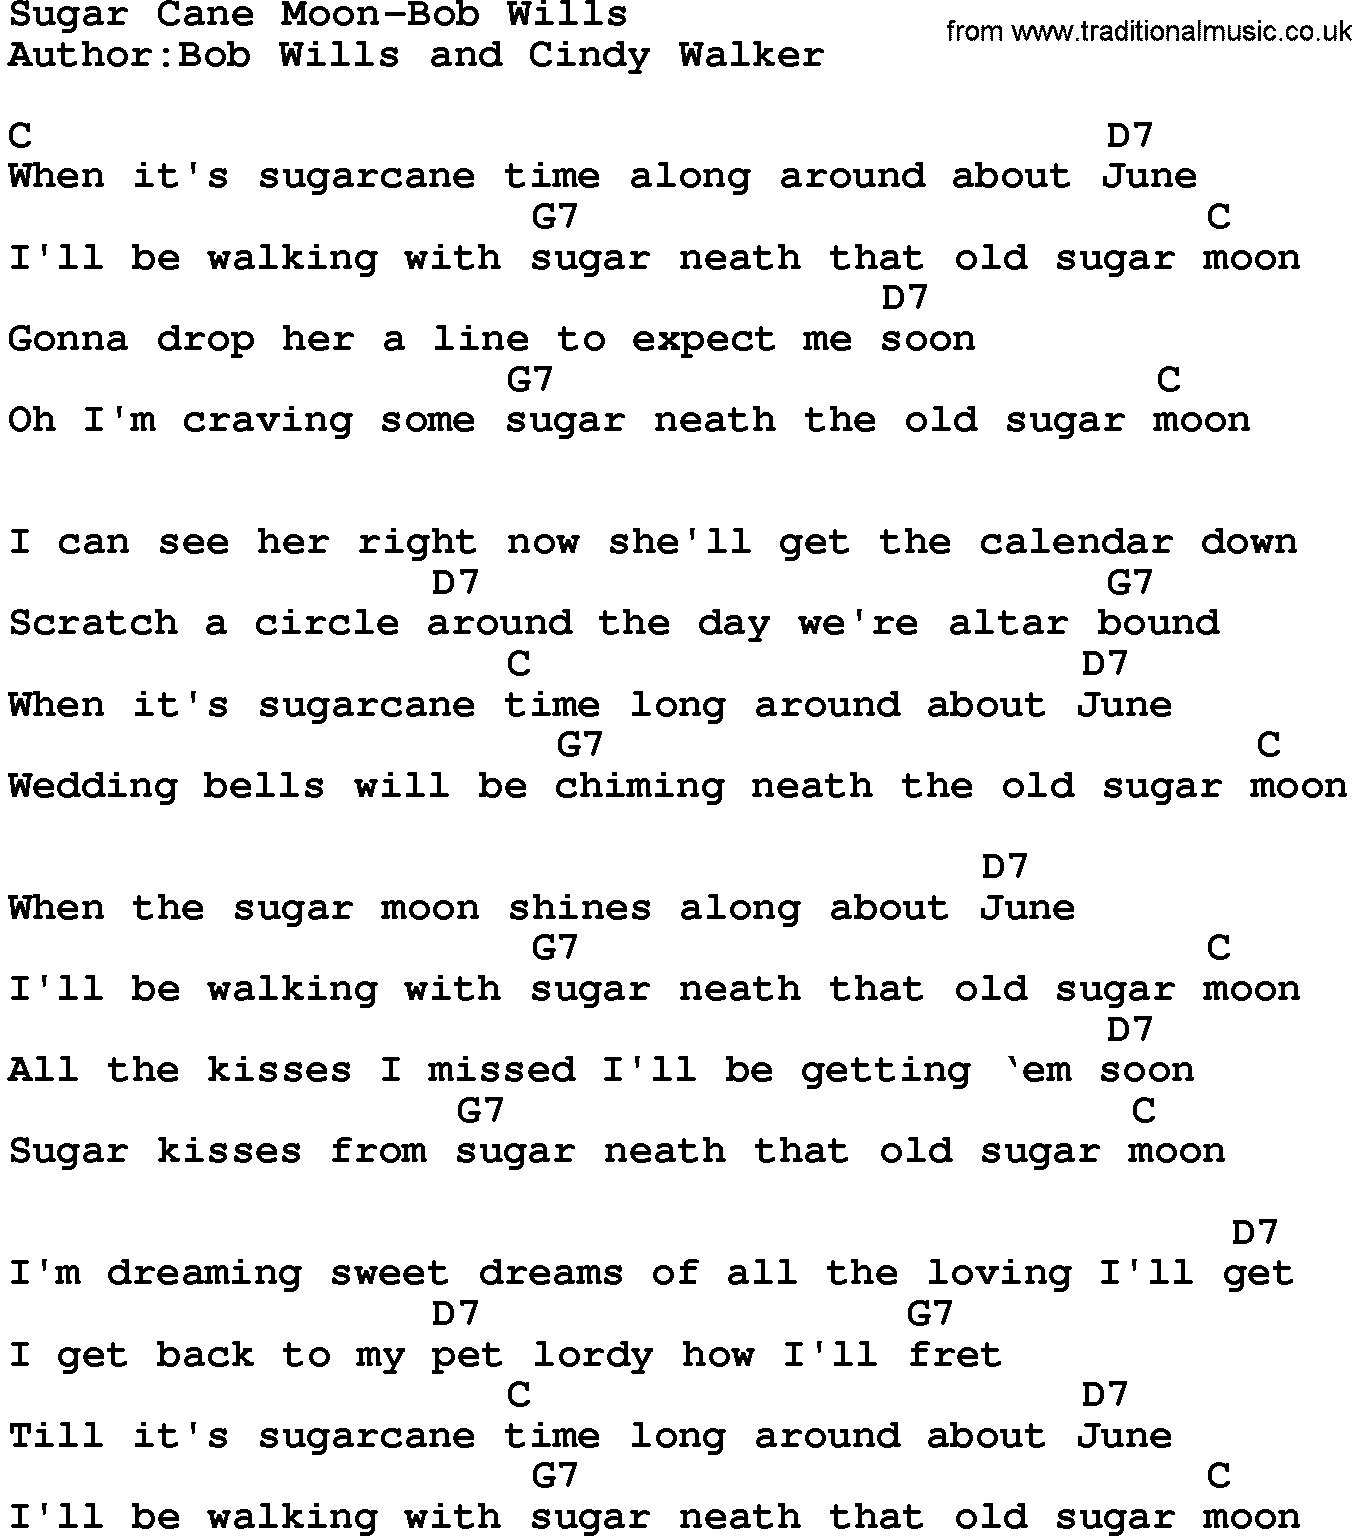 Country music song: Sugar Cane Moon-Bob Wills lyrics and chords